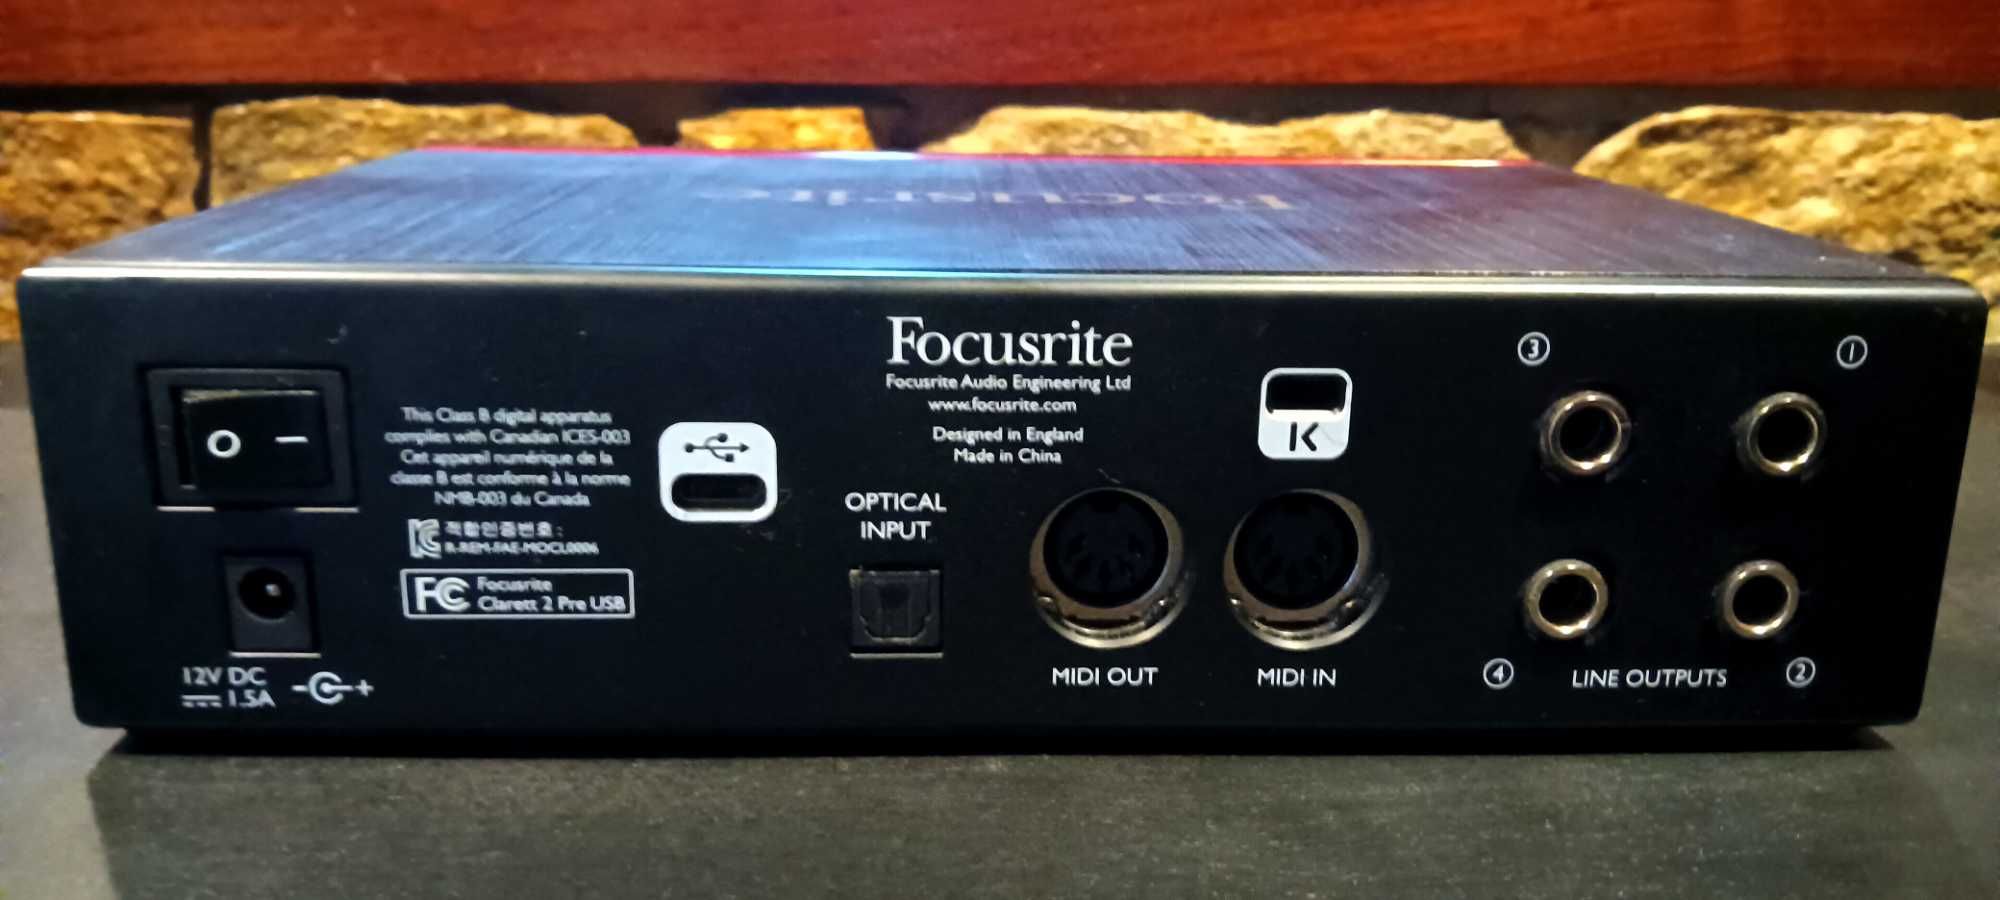 Focusrite Clarett 2 Pre audio interface